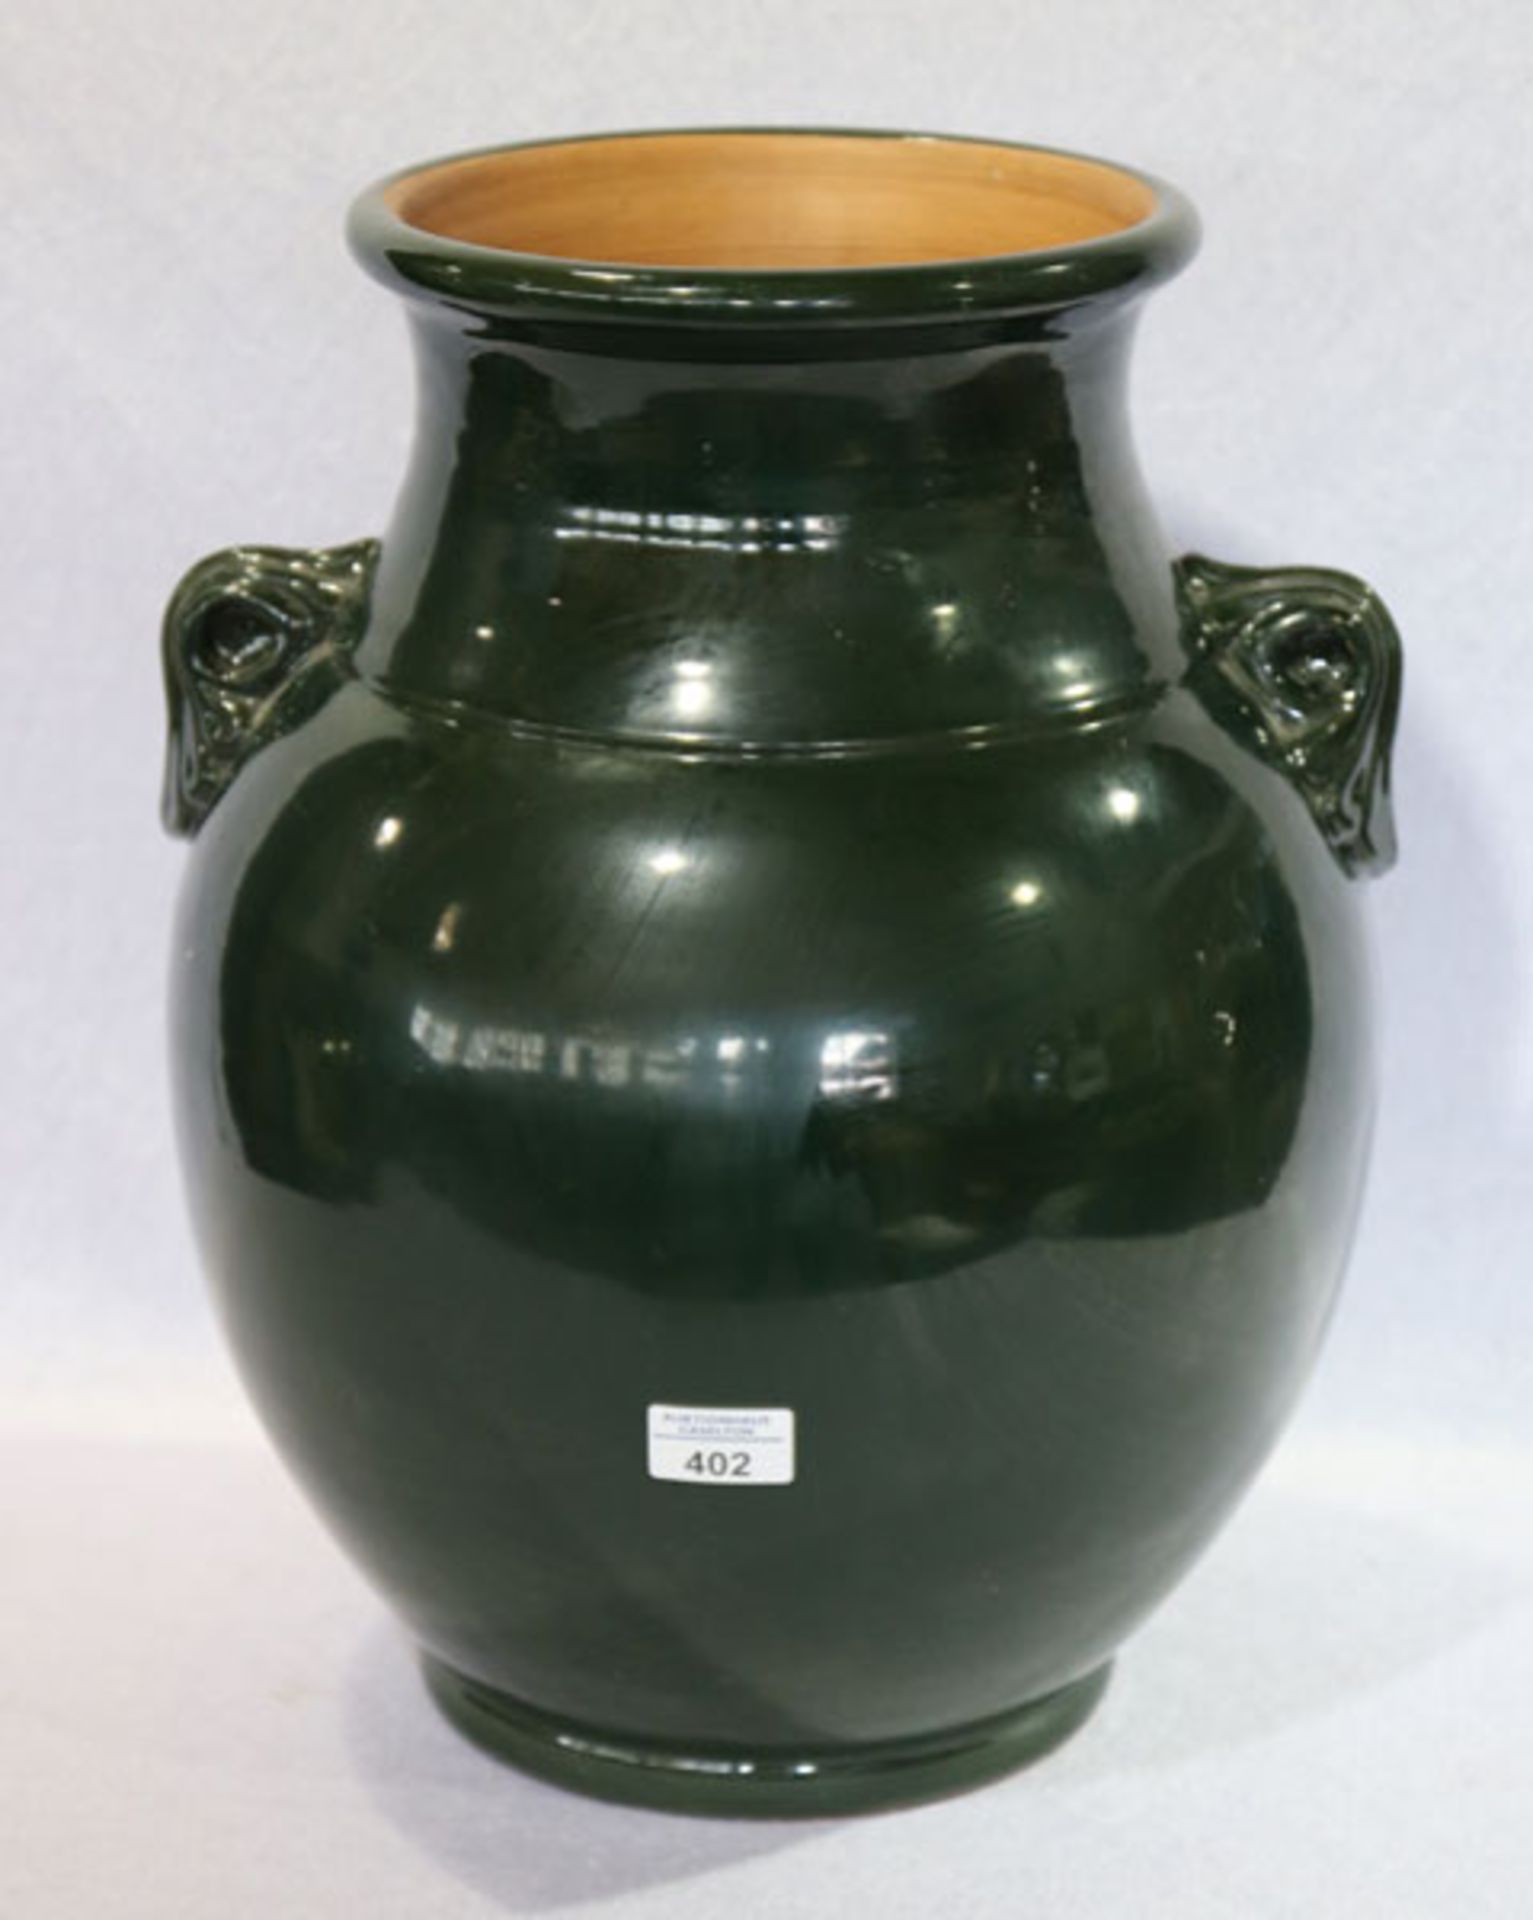 Große Keramik Vase, grün glasiert, Gebrauchsspuren, H 45 cm, D 38 cm